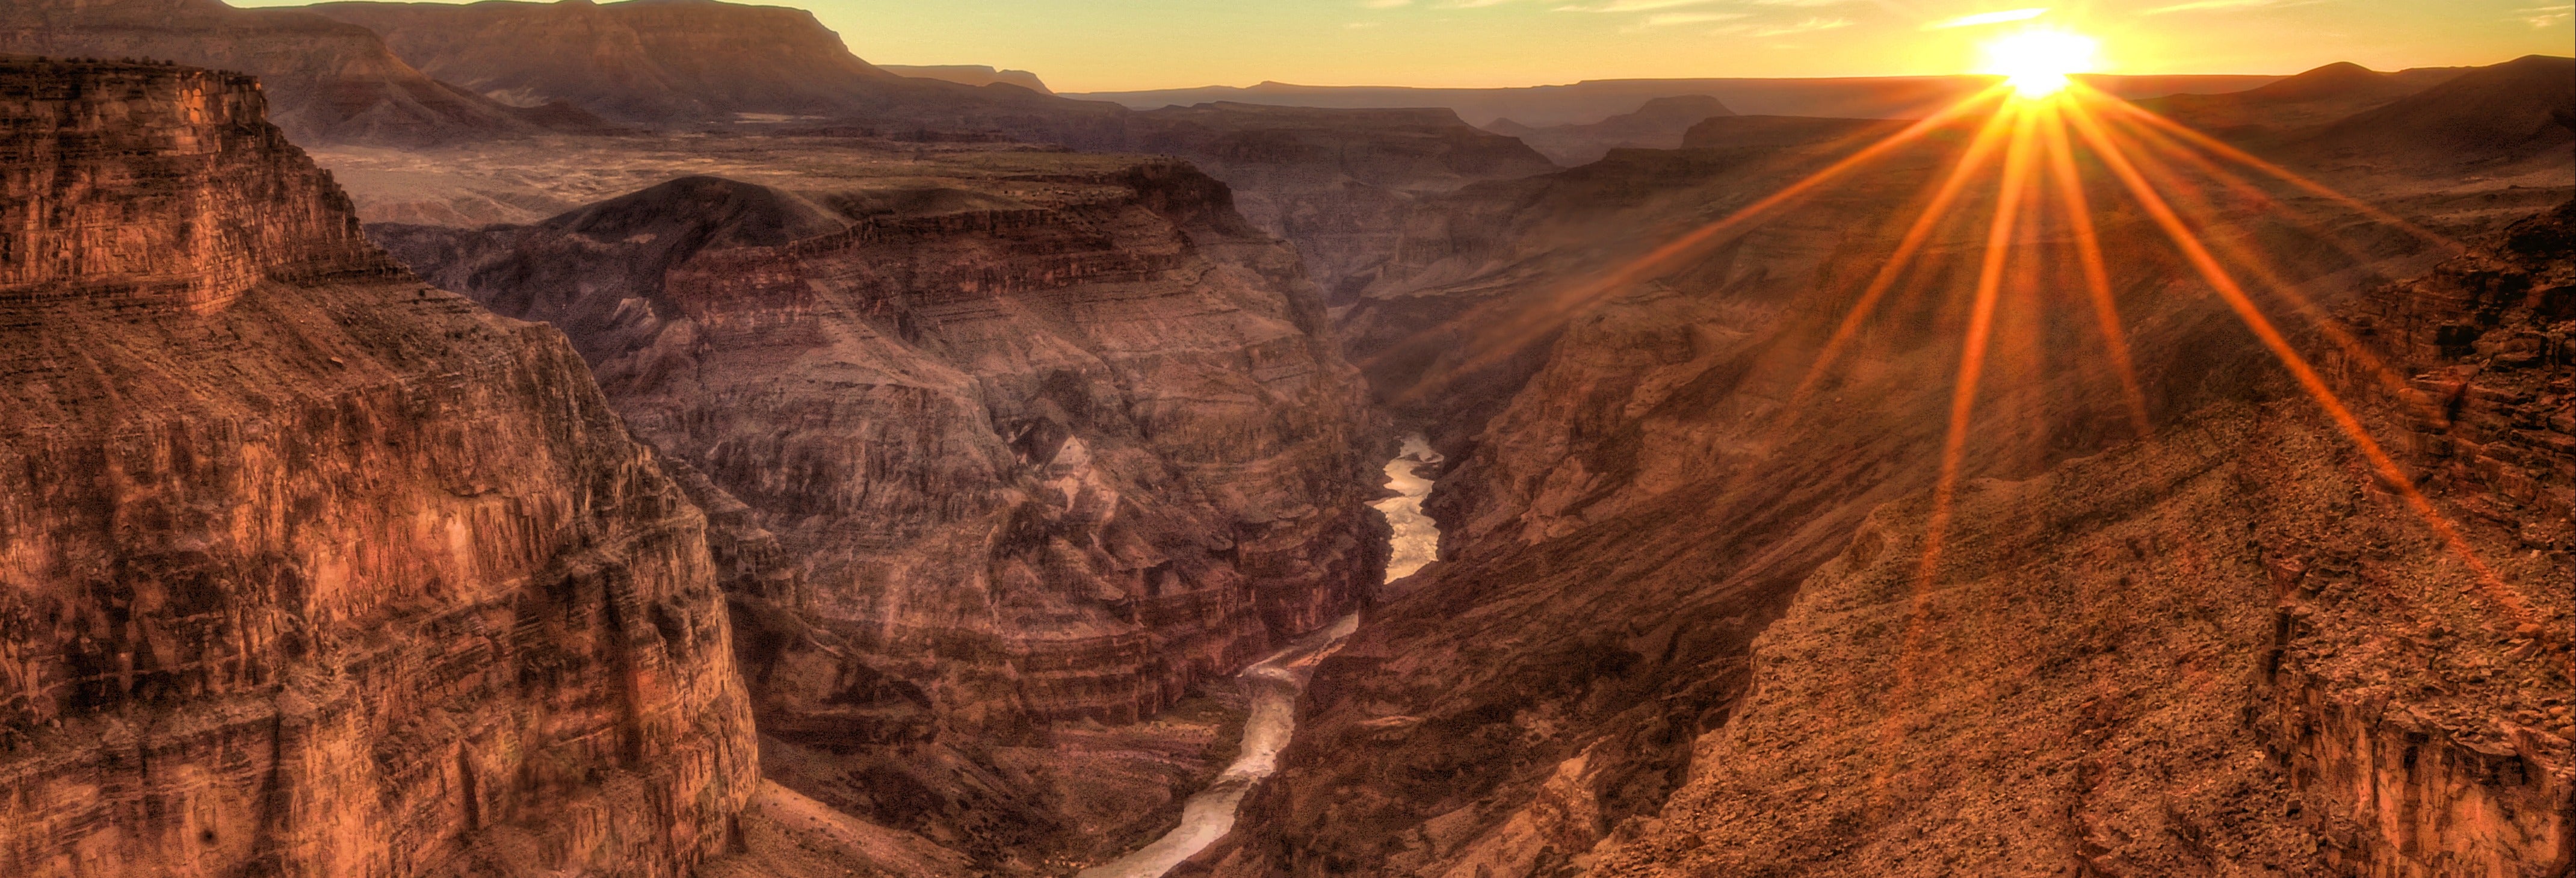 Excursão ao Grand Canyon ao entardecer